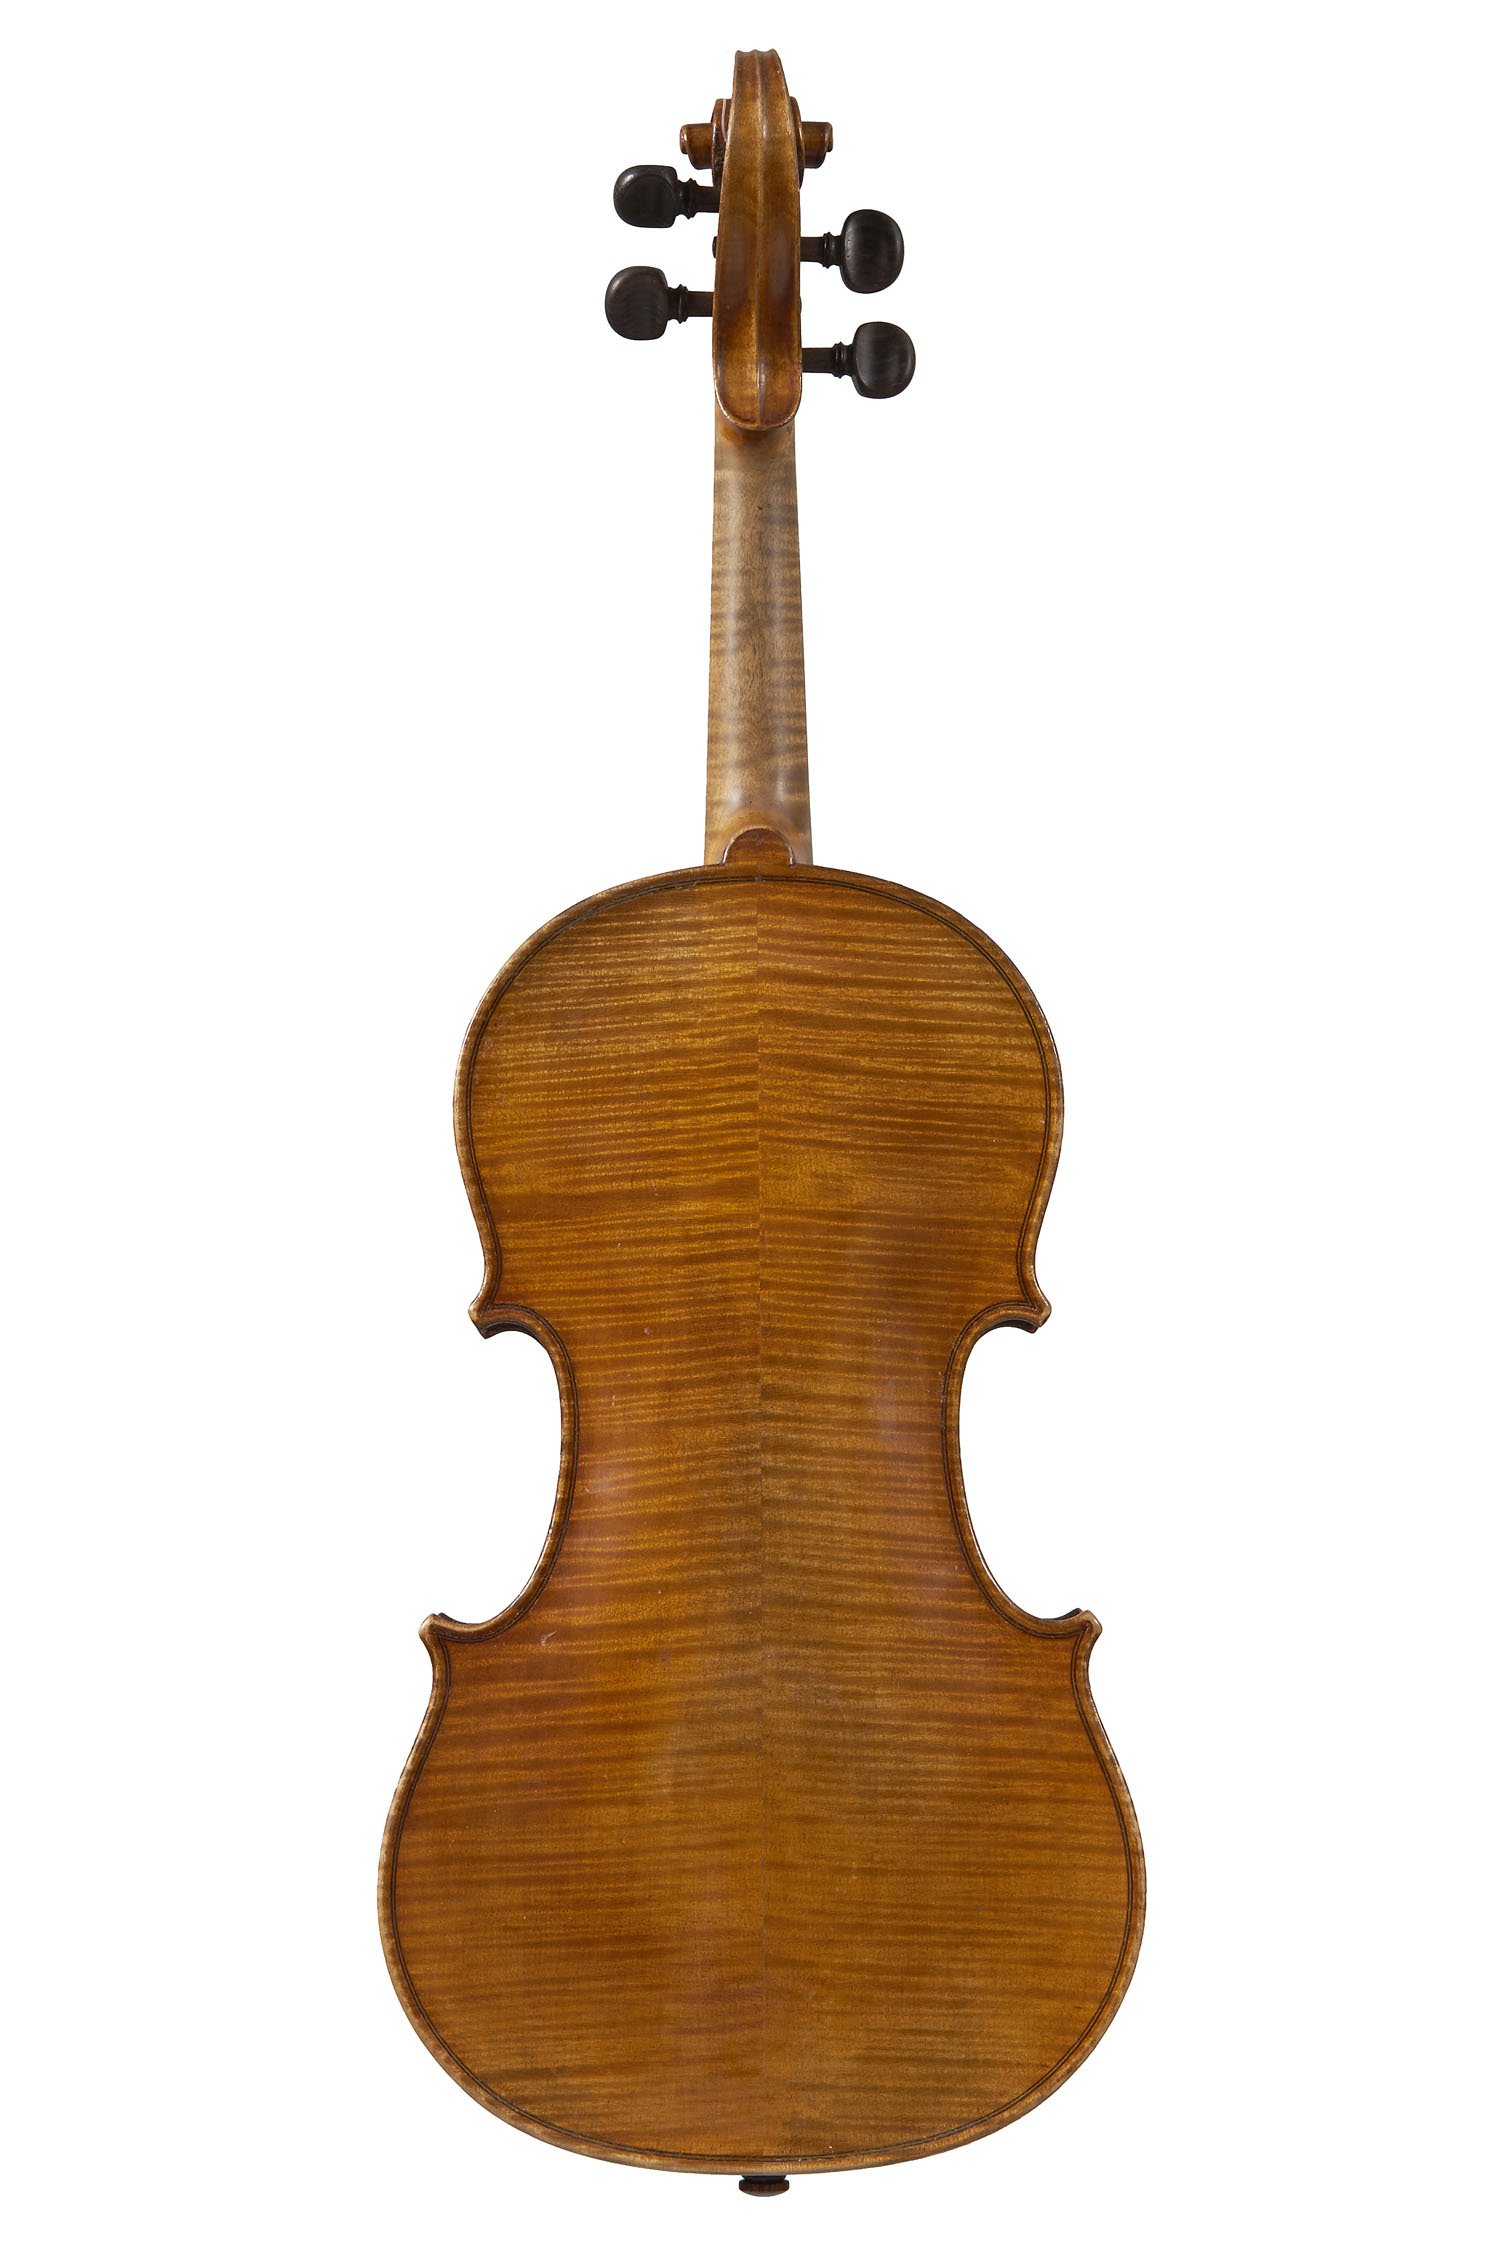 Тыква Страдивари. Чешская скрипка Cremona String co.. Старинная французская скрипка.